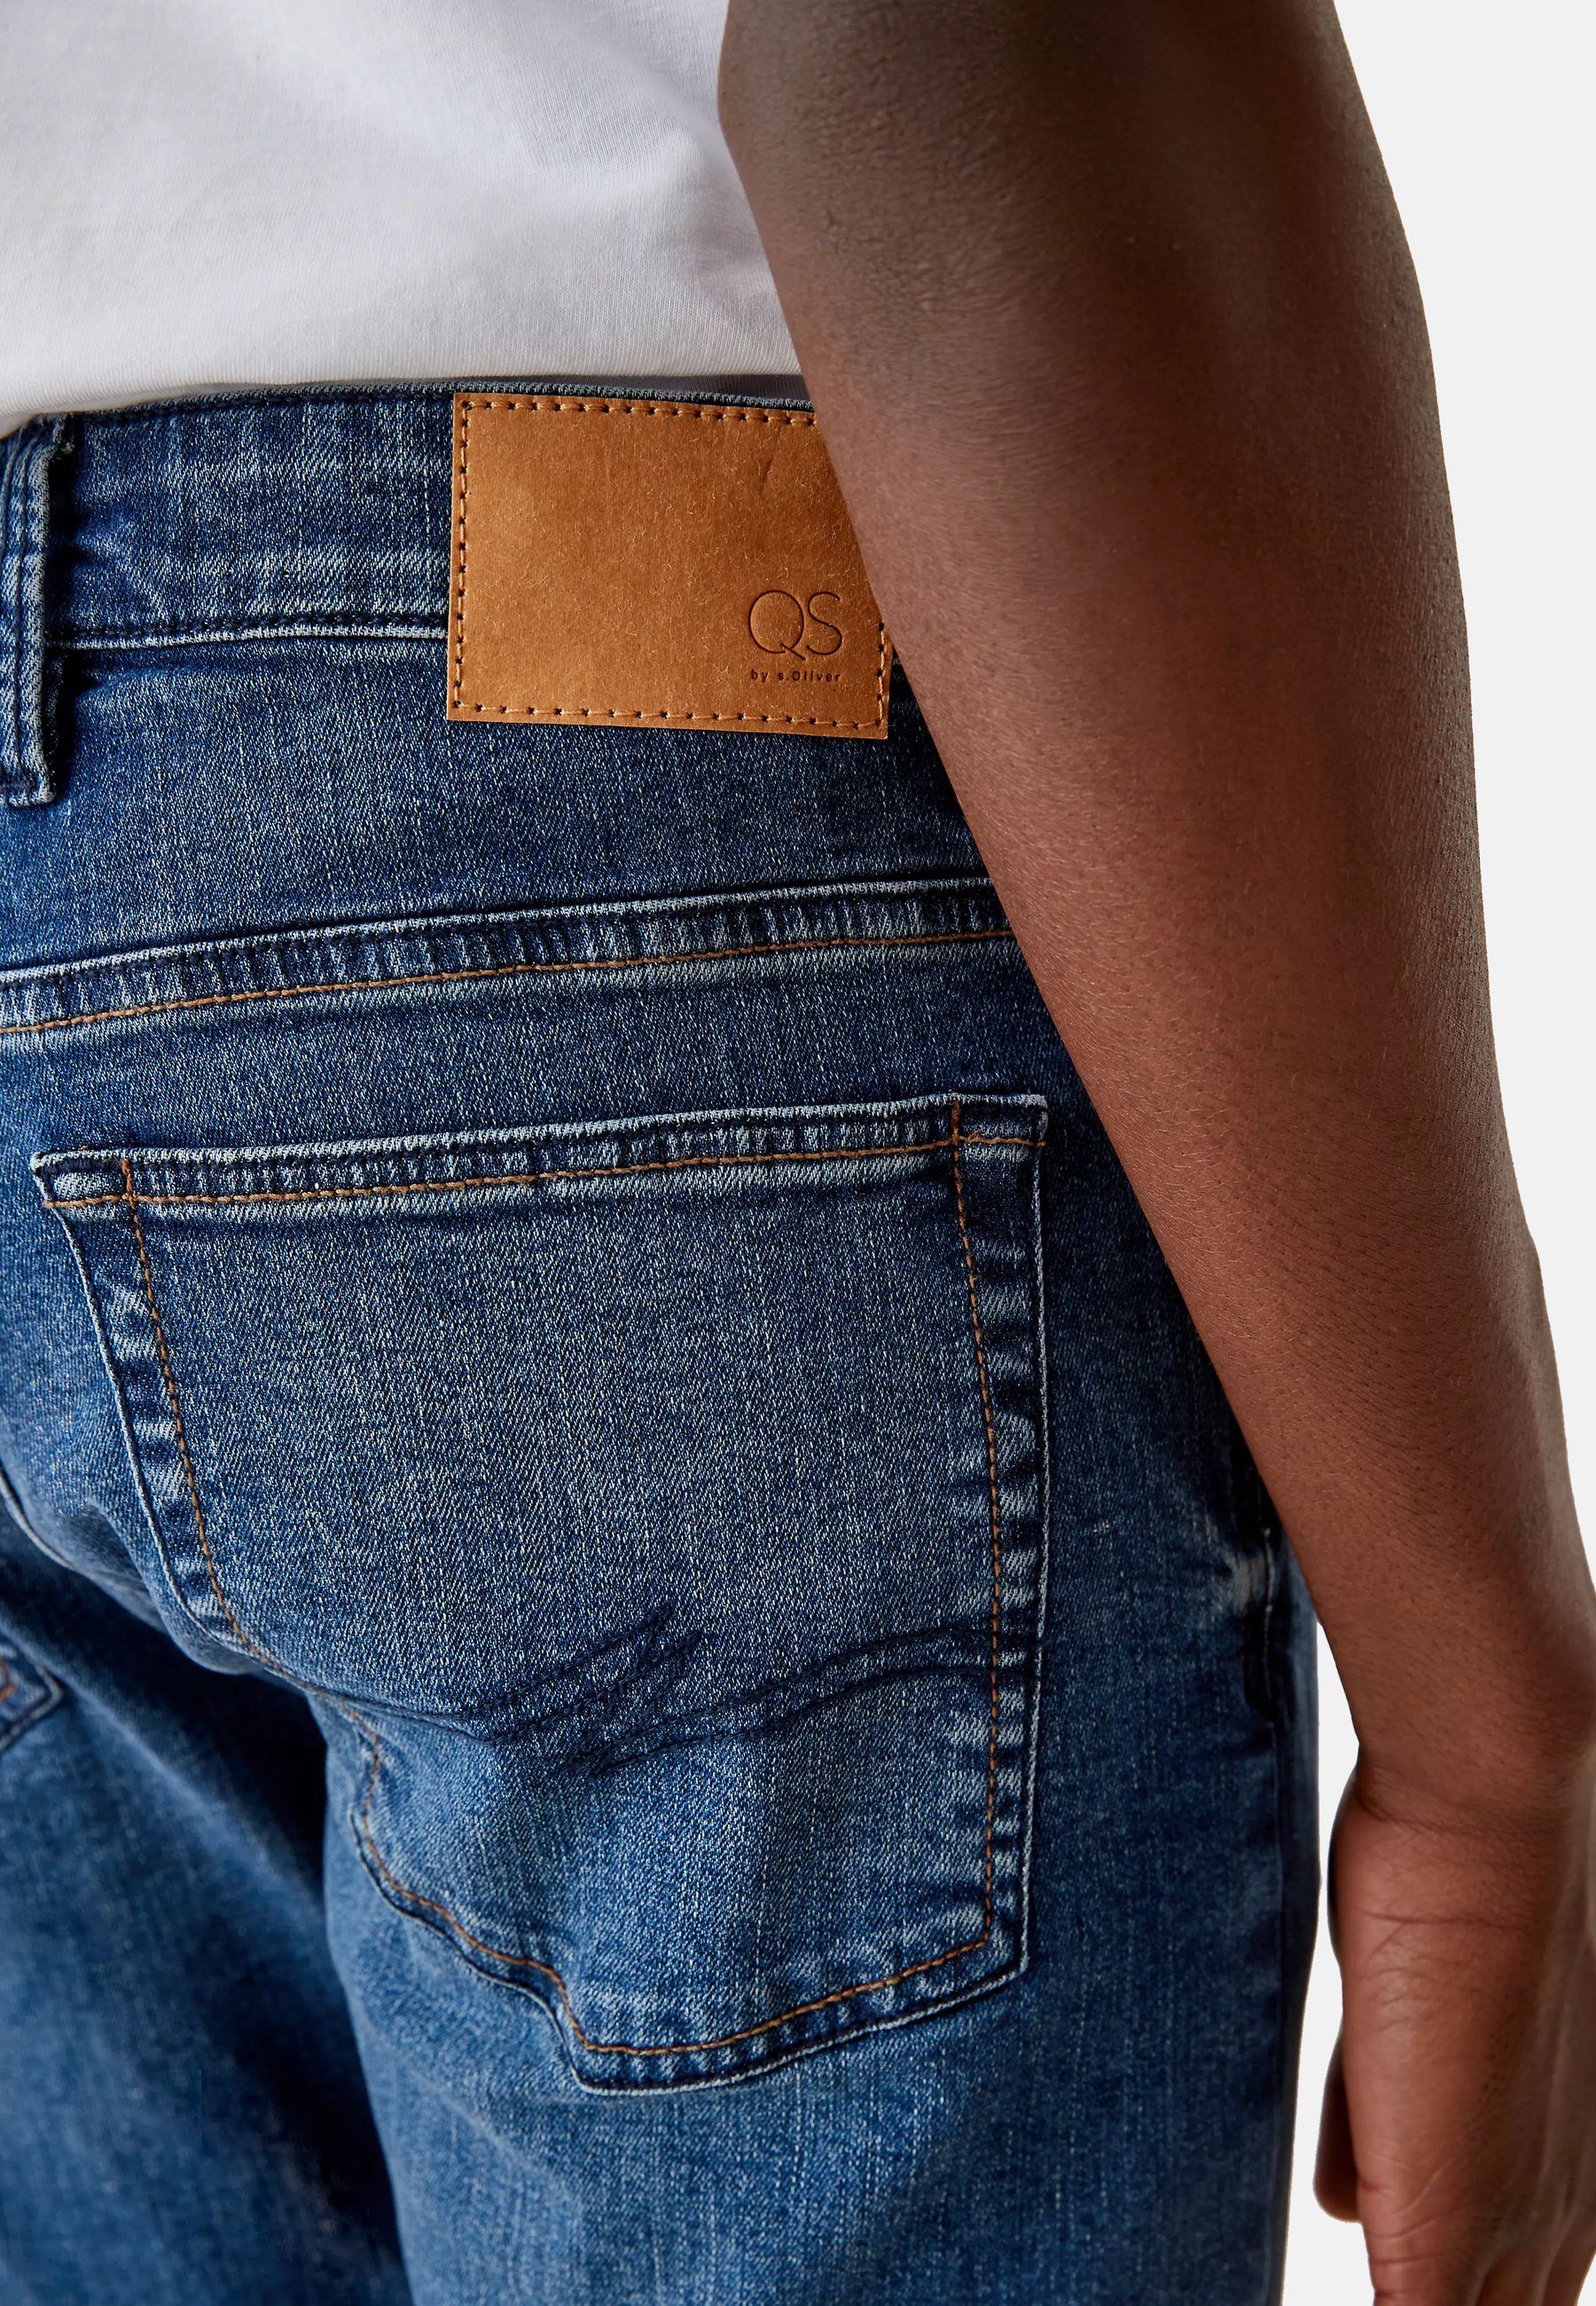 s.Oliver 5-Pocket-Jeans Five-Pocket-Style Slim Jeans im Hose